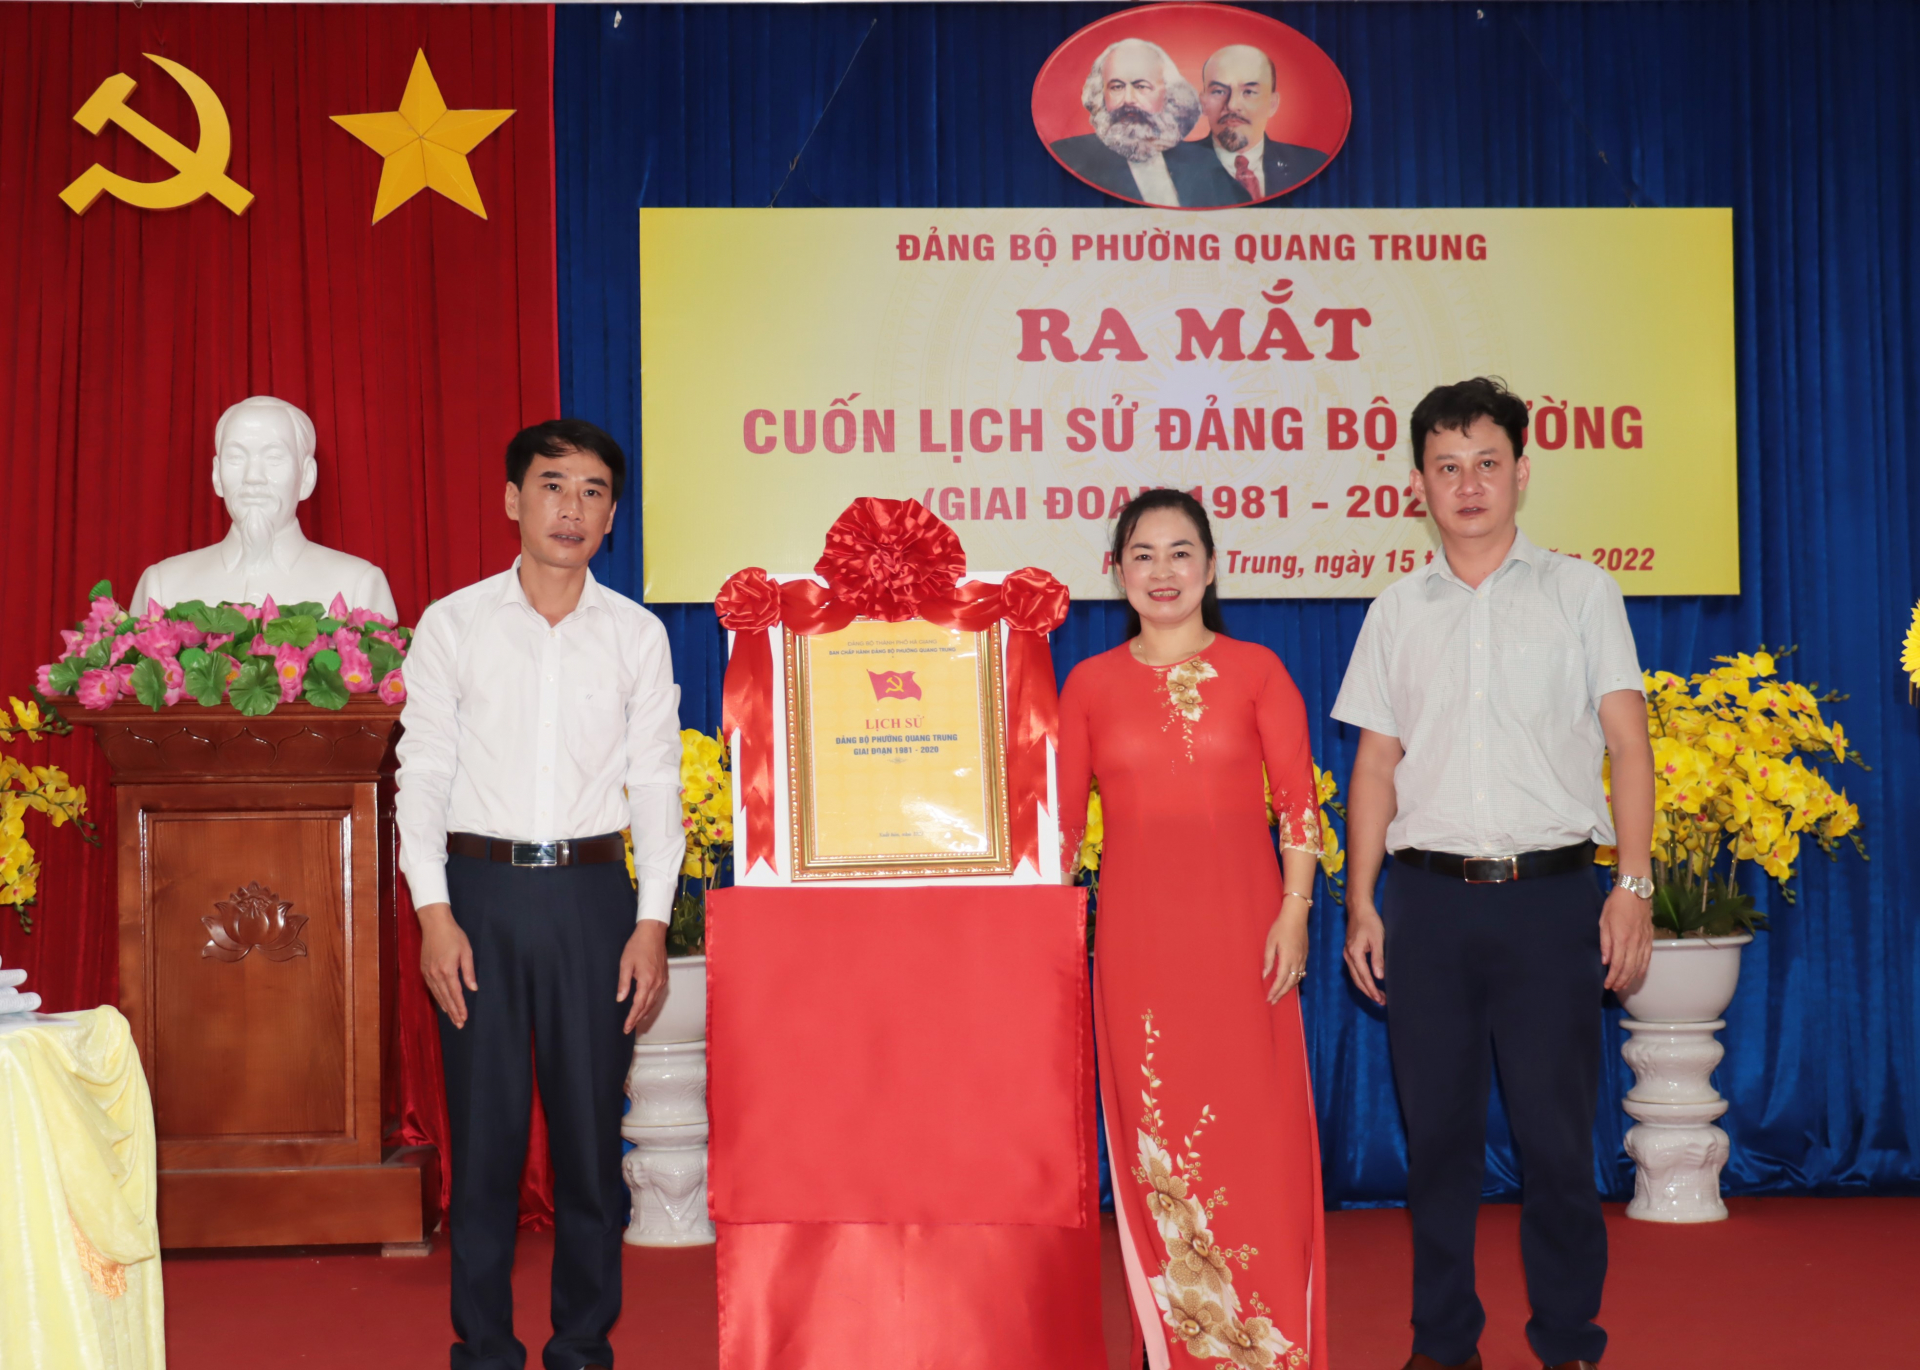 Lãnh đạo phường Quang Trung khai mở cuốn Lịch sử Đảng bộ phường, giai đoạn 1981 – 2020.